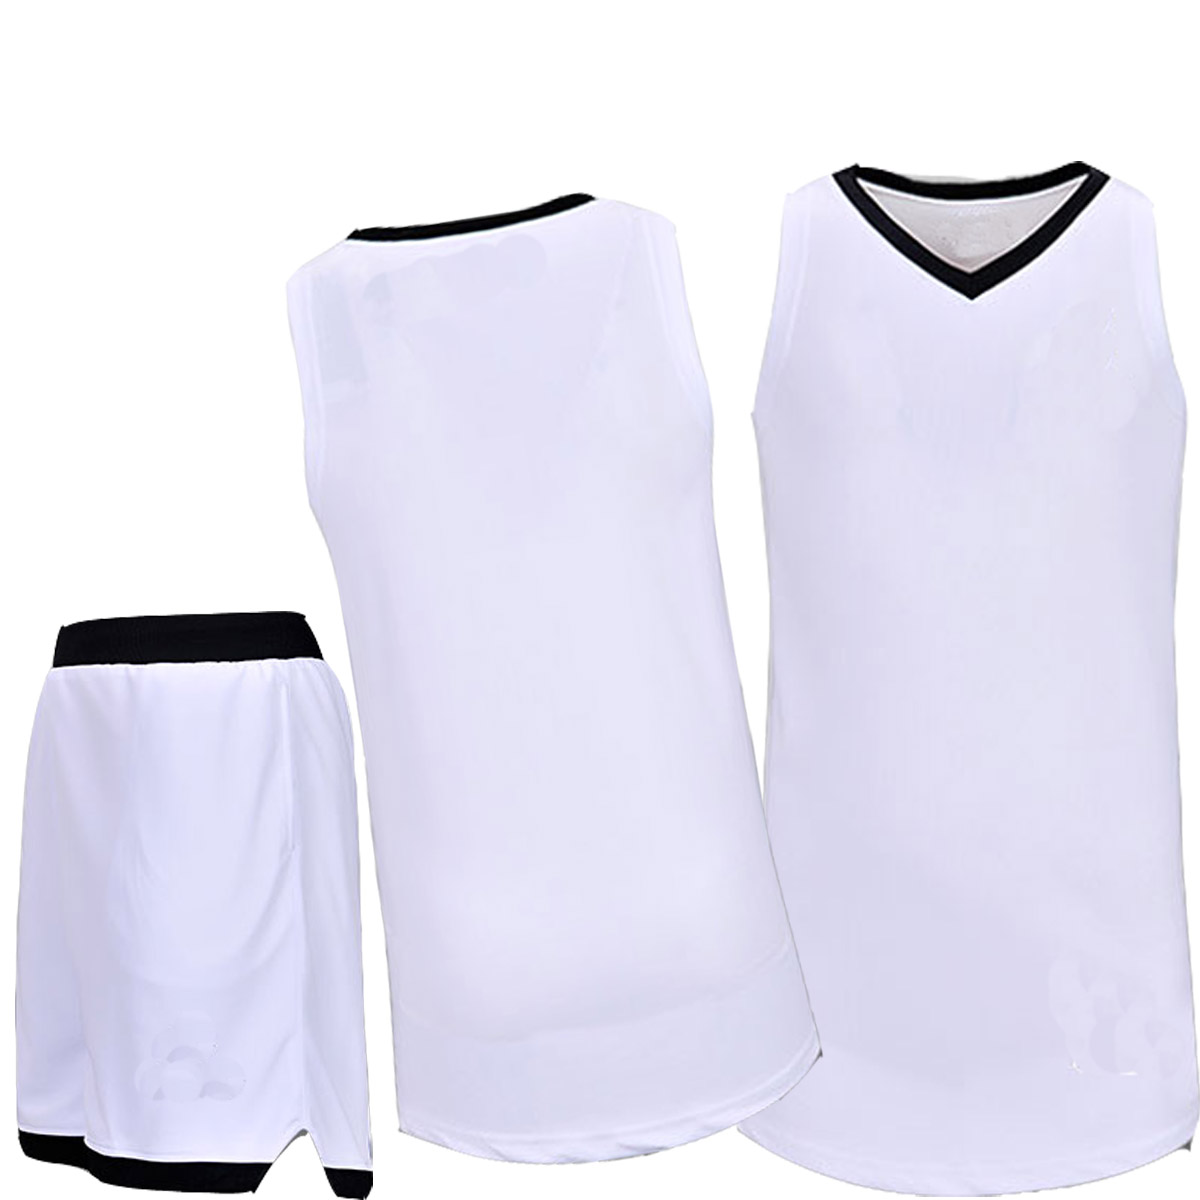 新款篮球服套装空板篮球服 男装篮球服 队服印号团购定制个性印字